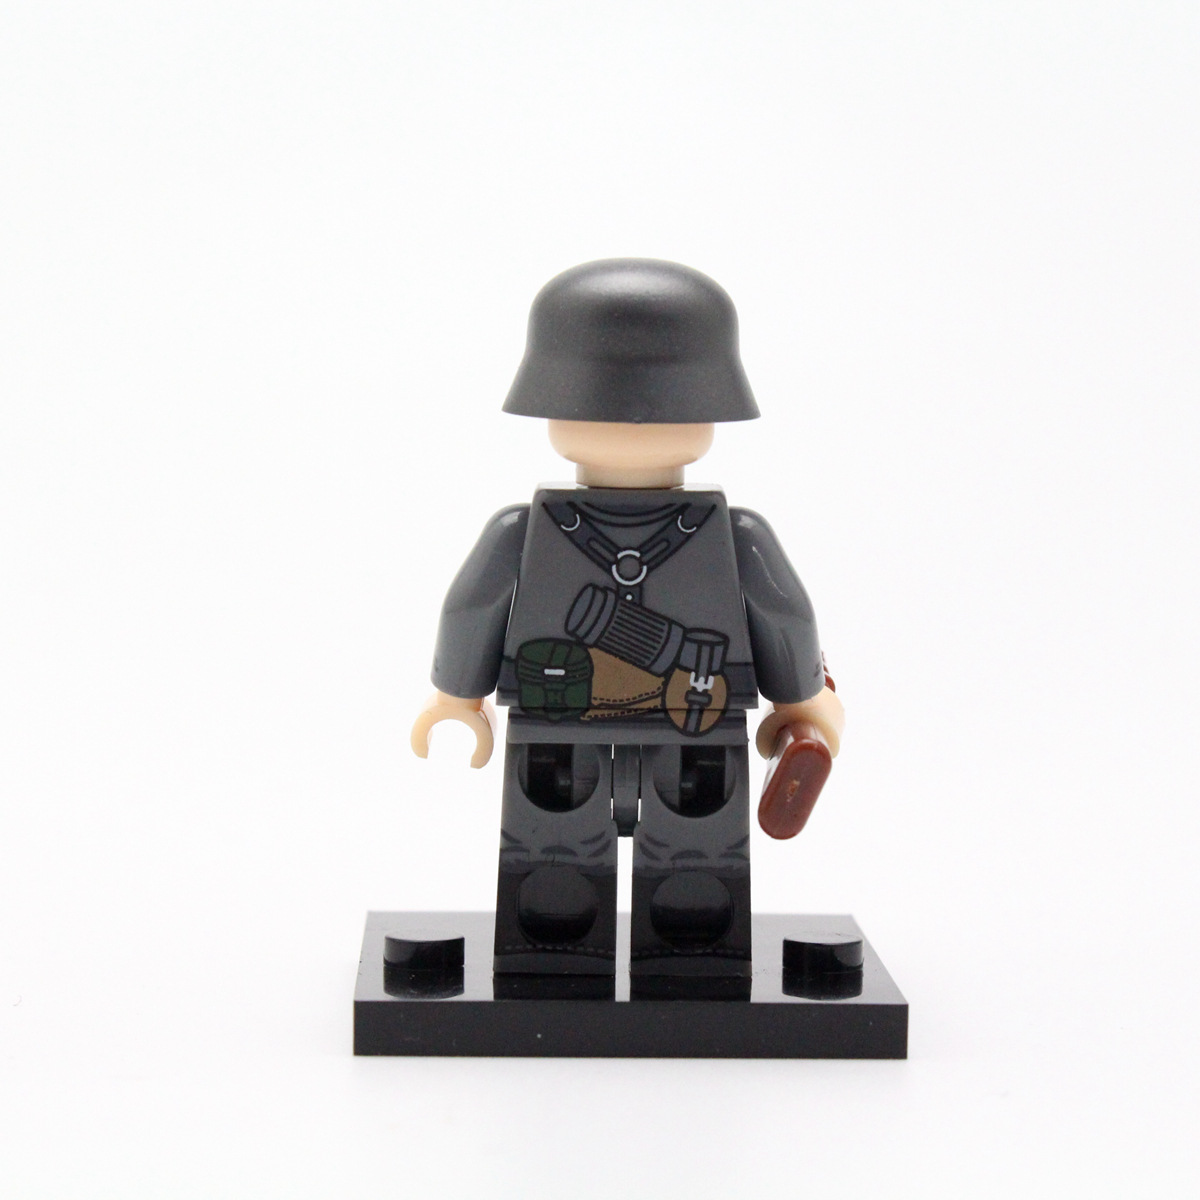 Bộ Lắp Ráp Lego Mô Hình Quân Đội Jg001 Wwii